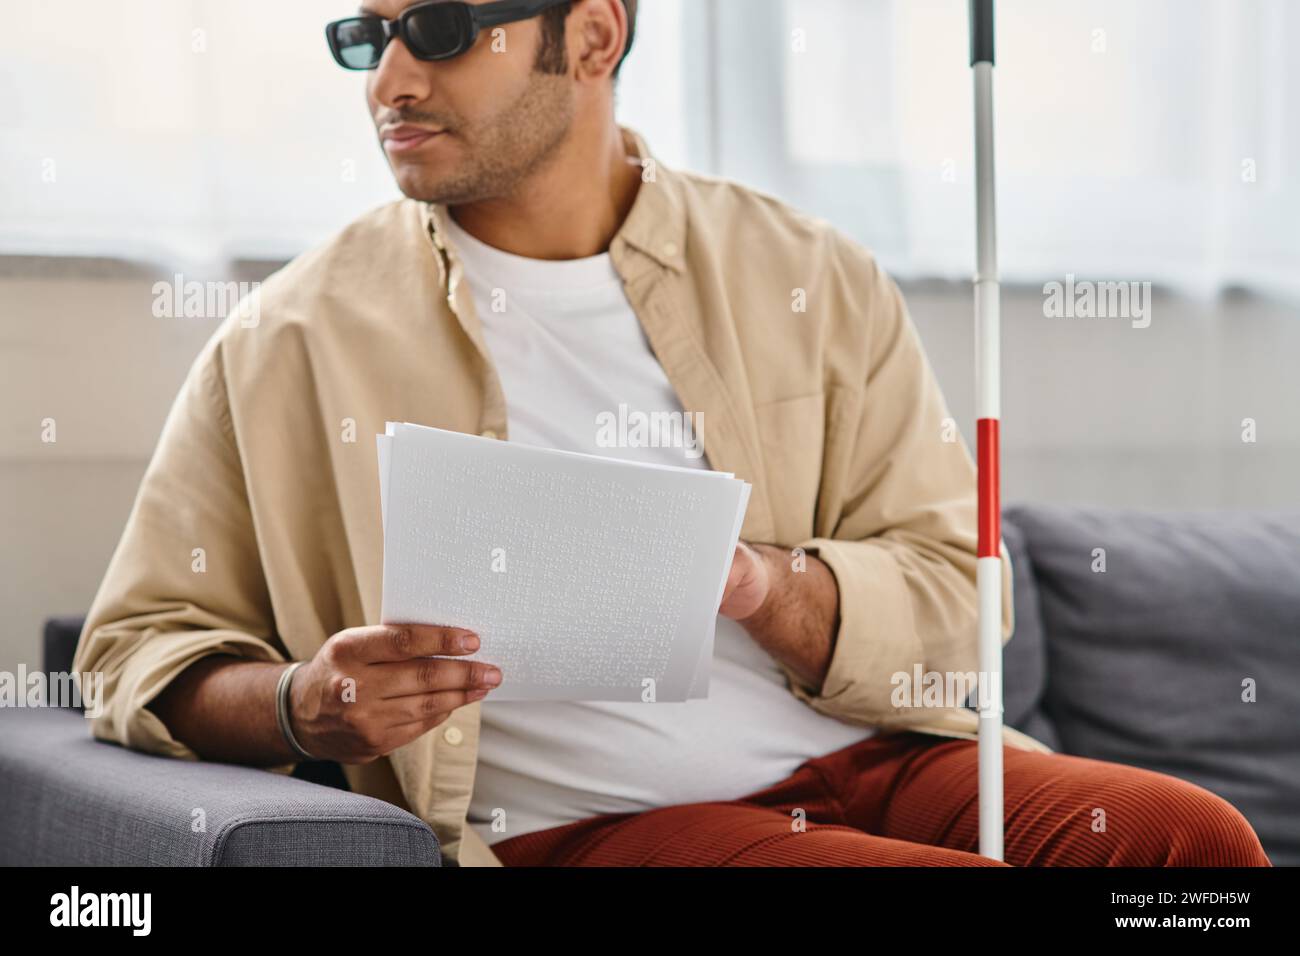 allegro indiano con disabilità visiva con occhiali e bastone da passeggio che legge il codice braille Foto Stock